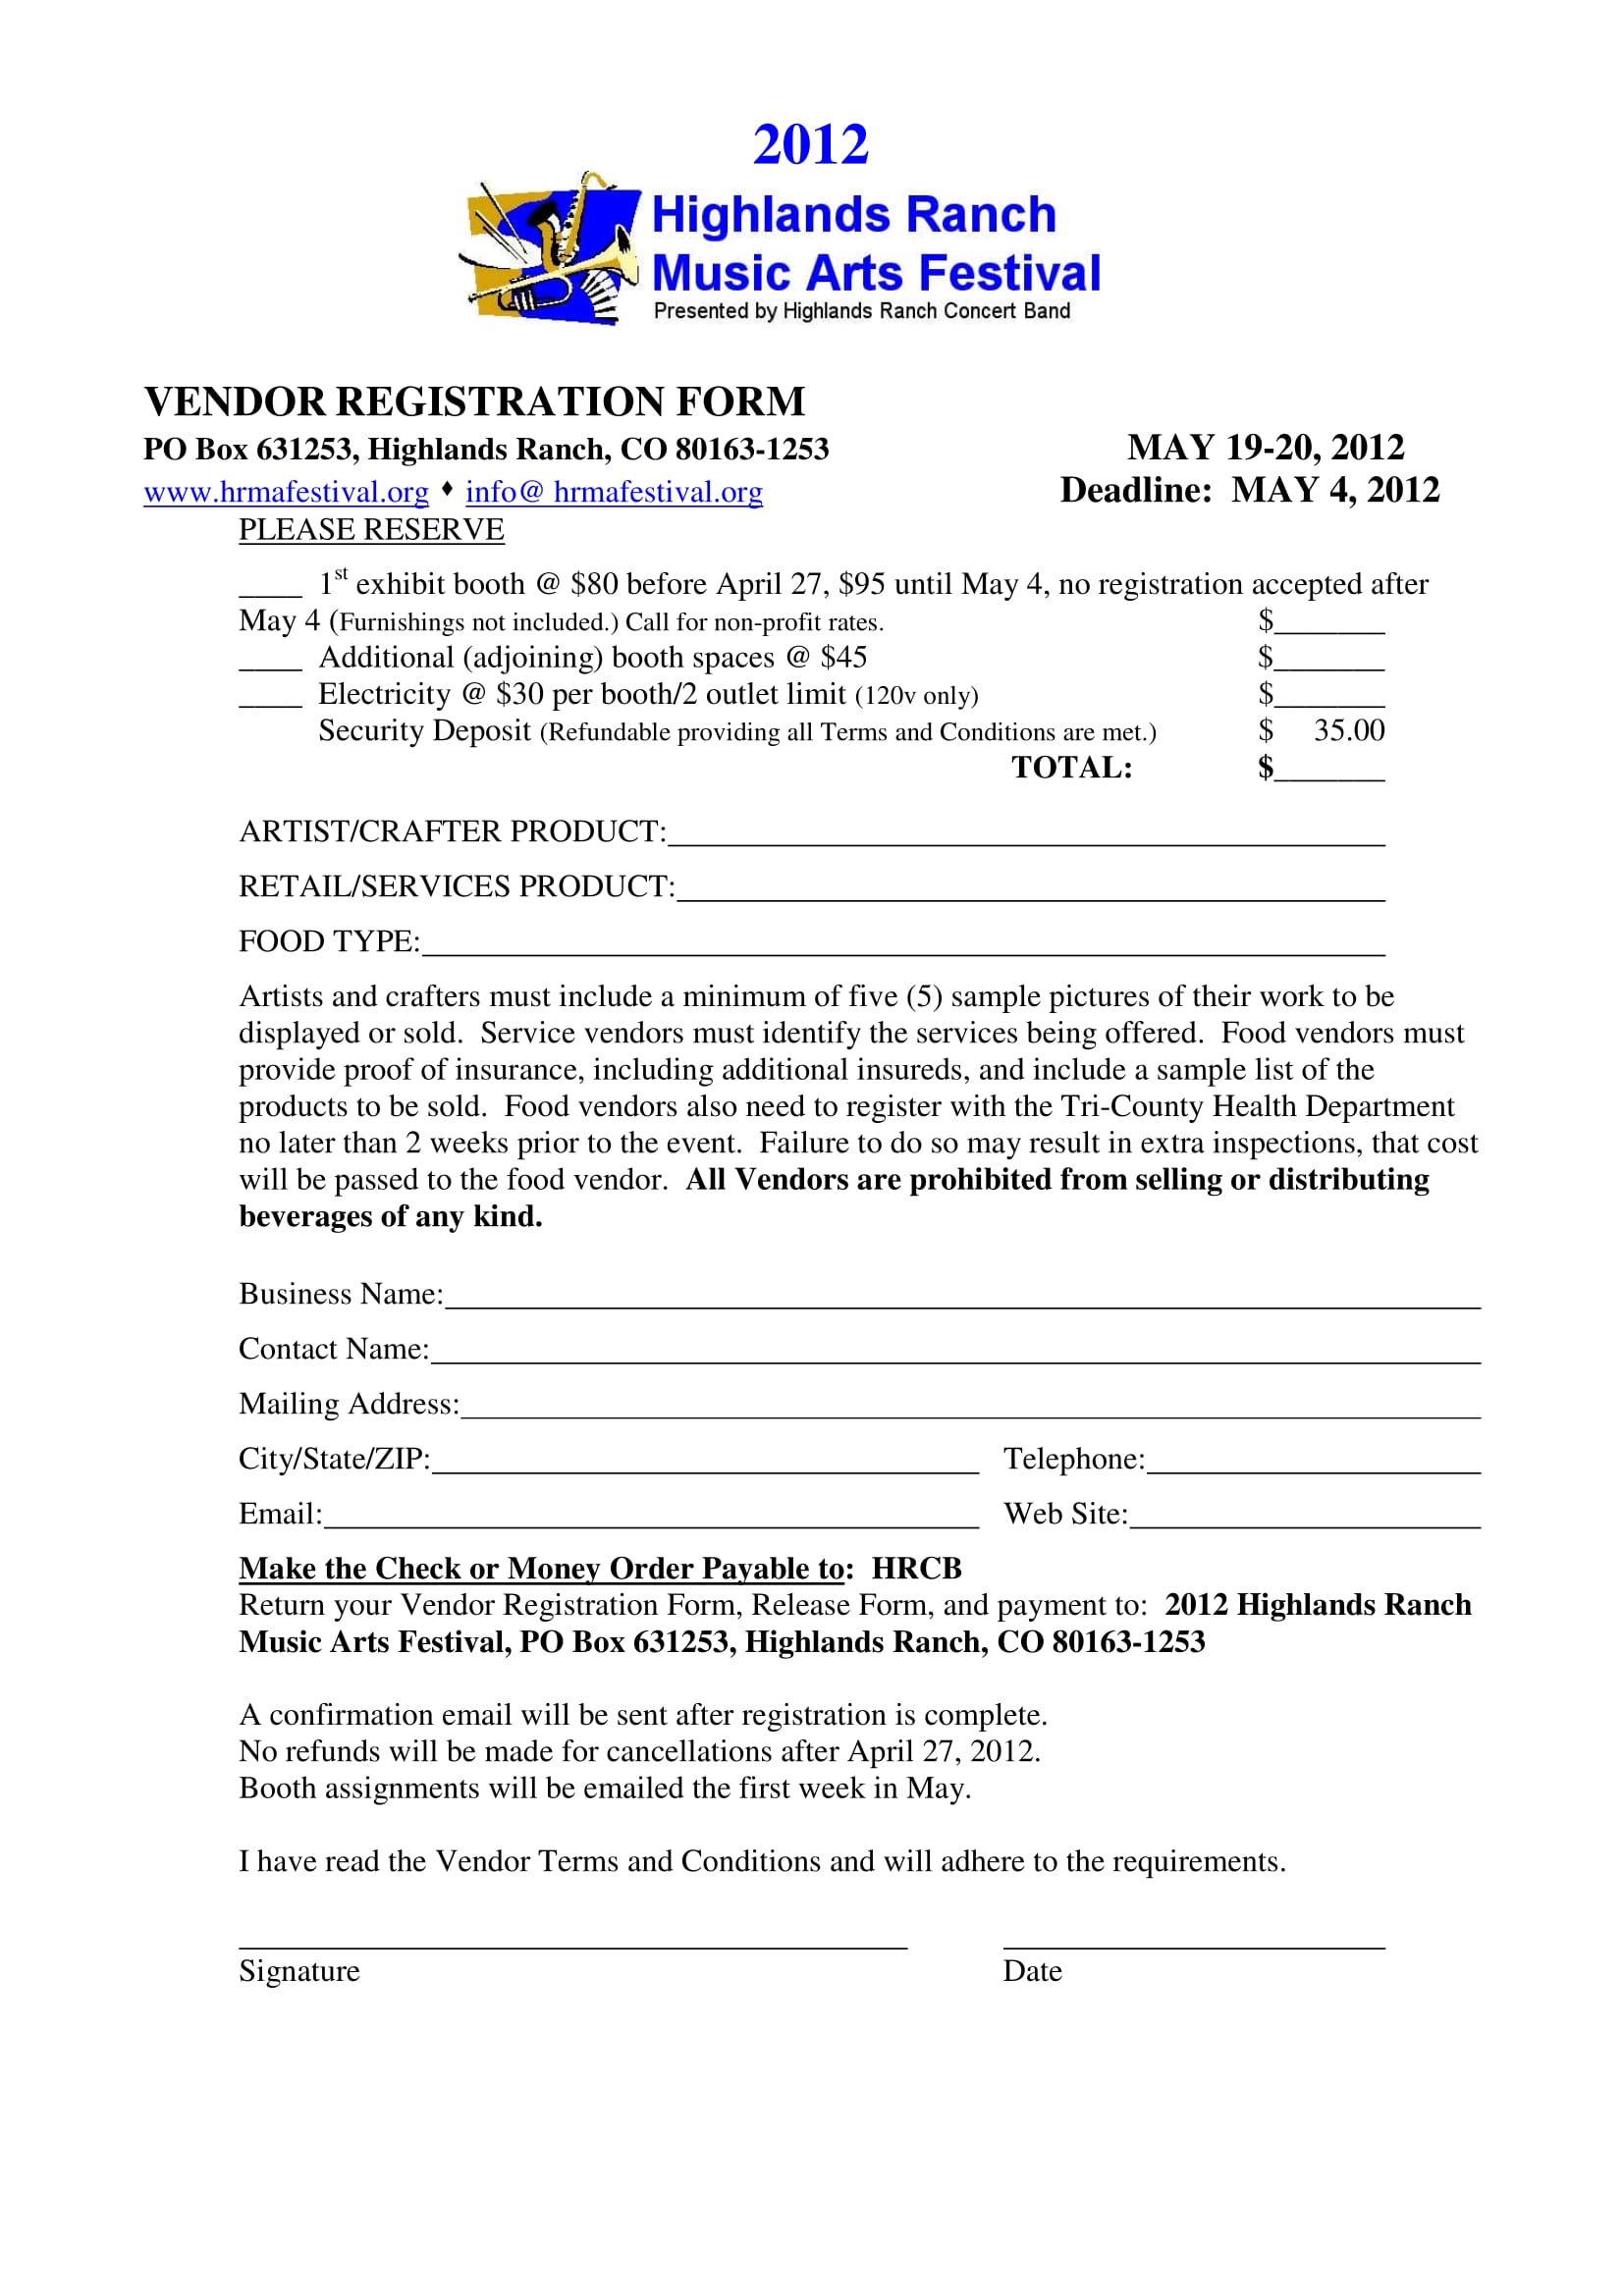 Event Vendor Registration Form Template